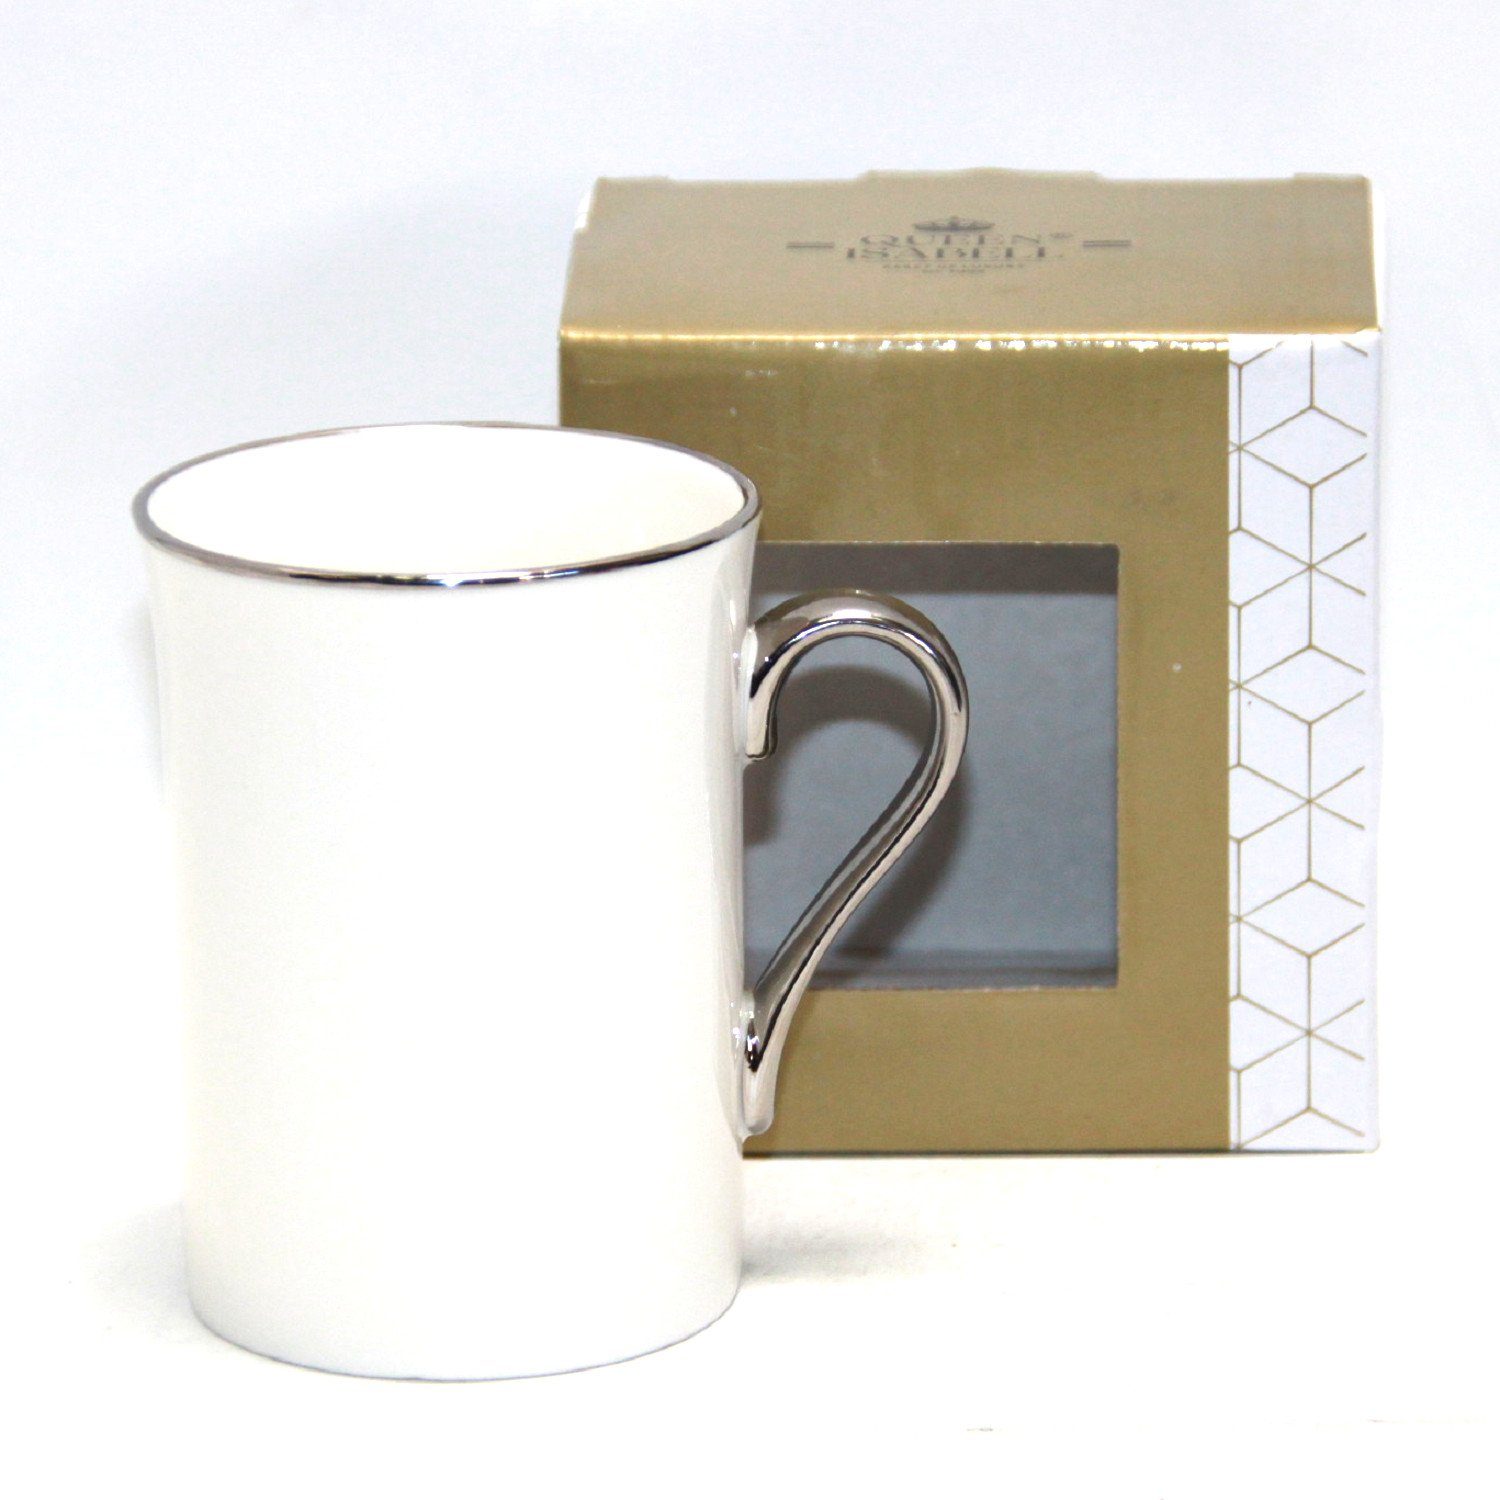 Porzellan-Kaffeebecher Becher W23SV53-06396, 250ml Isabell Queen